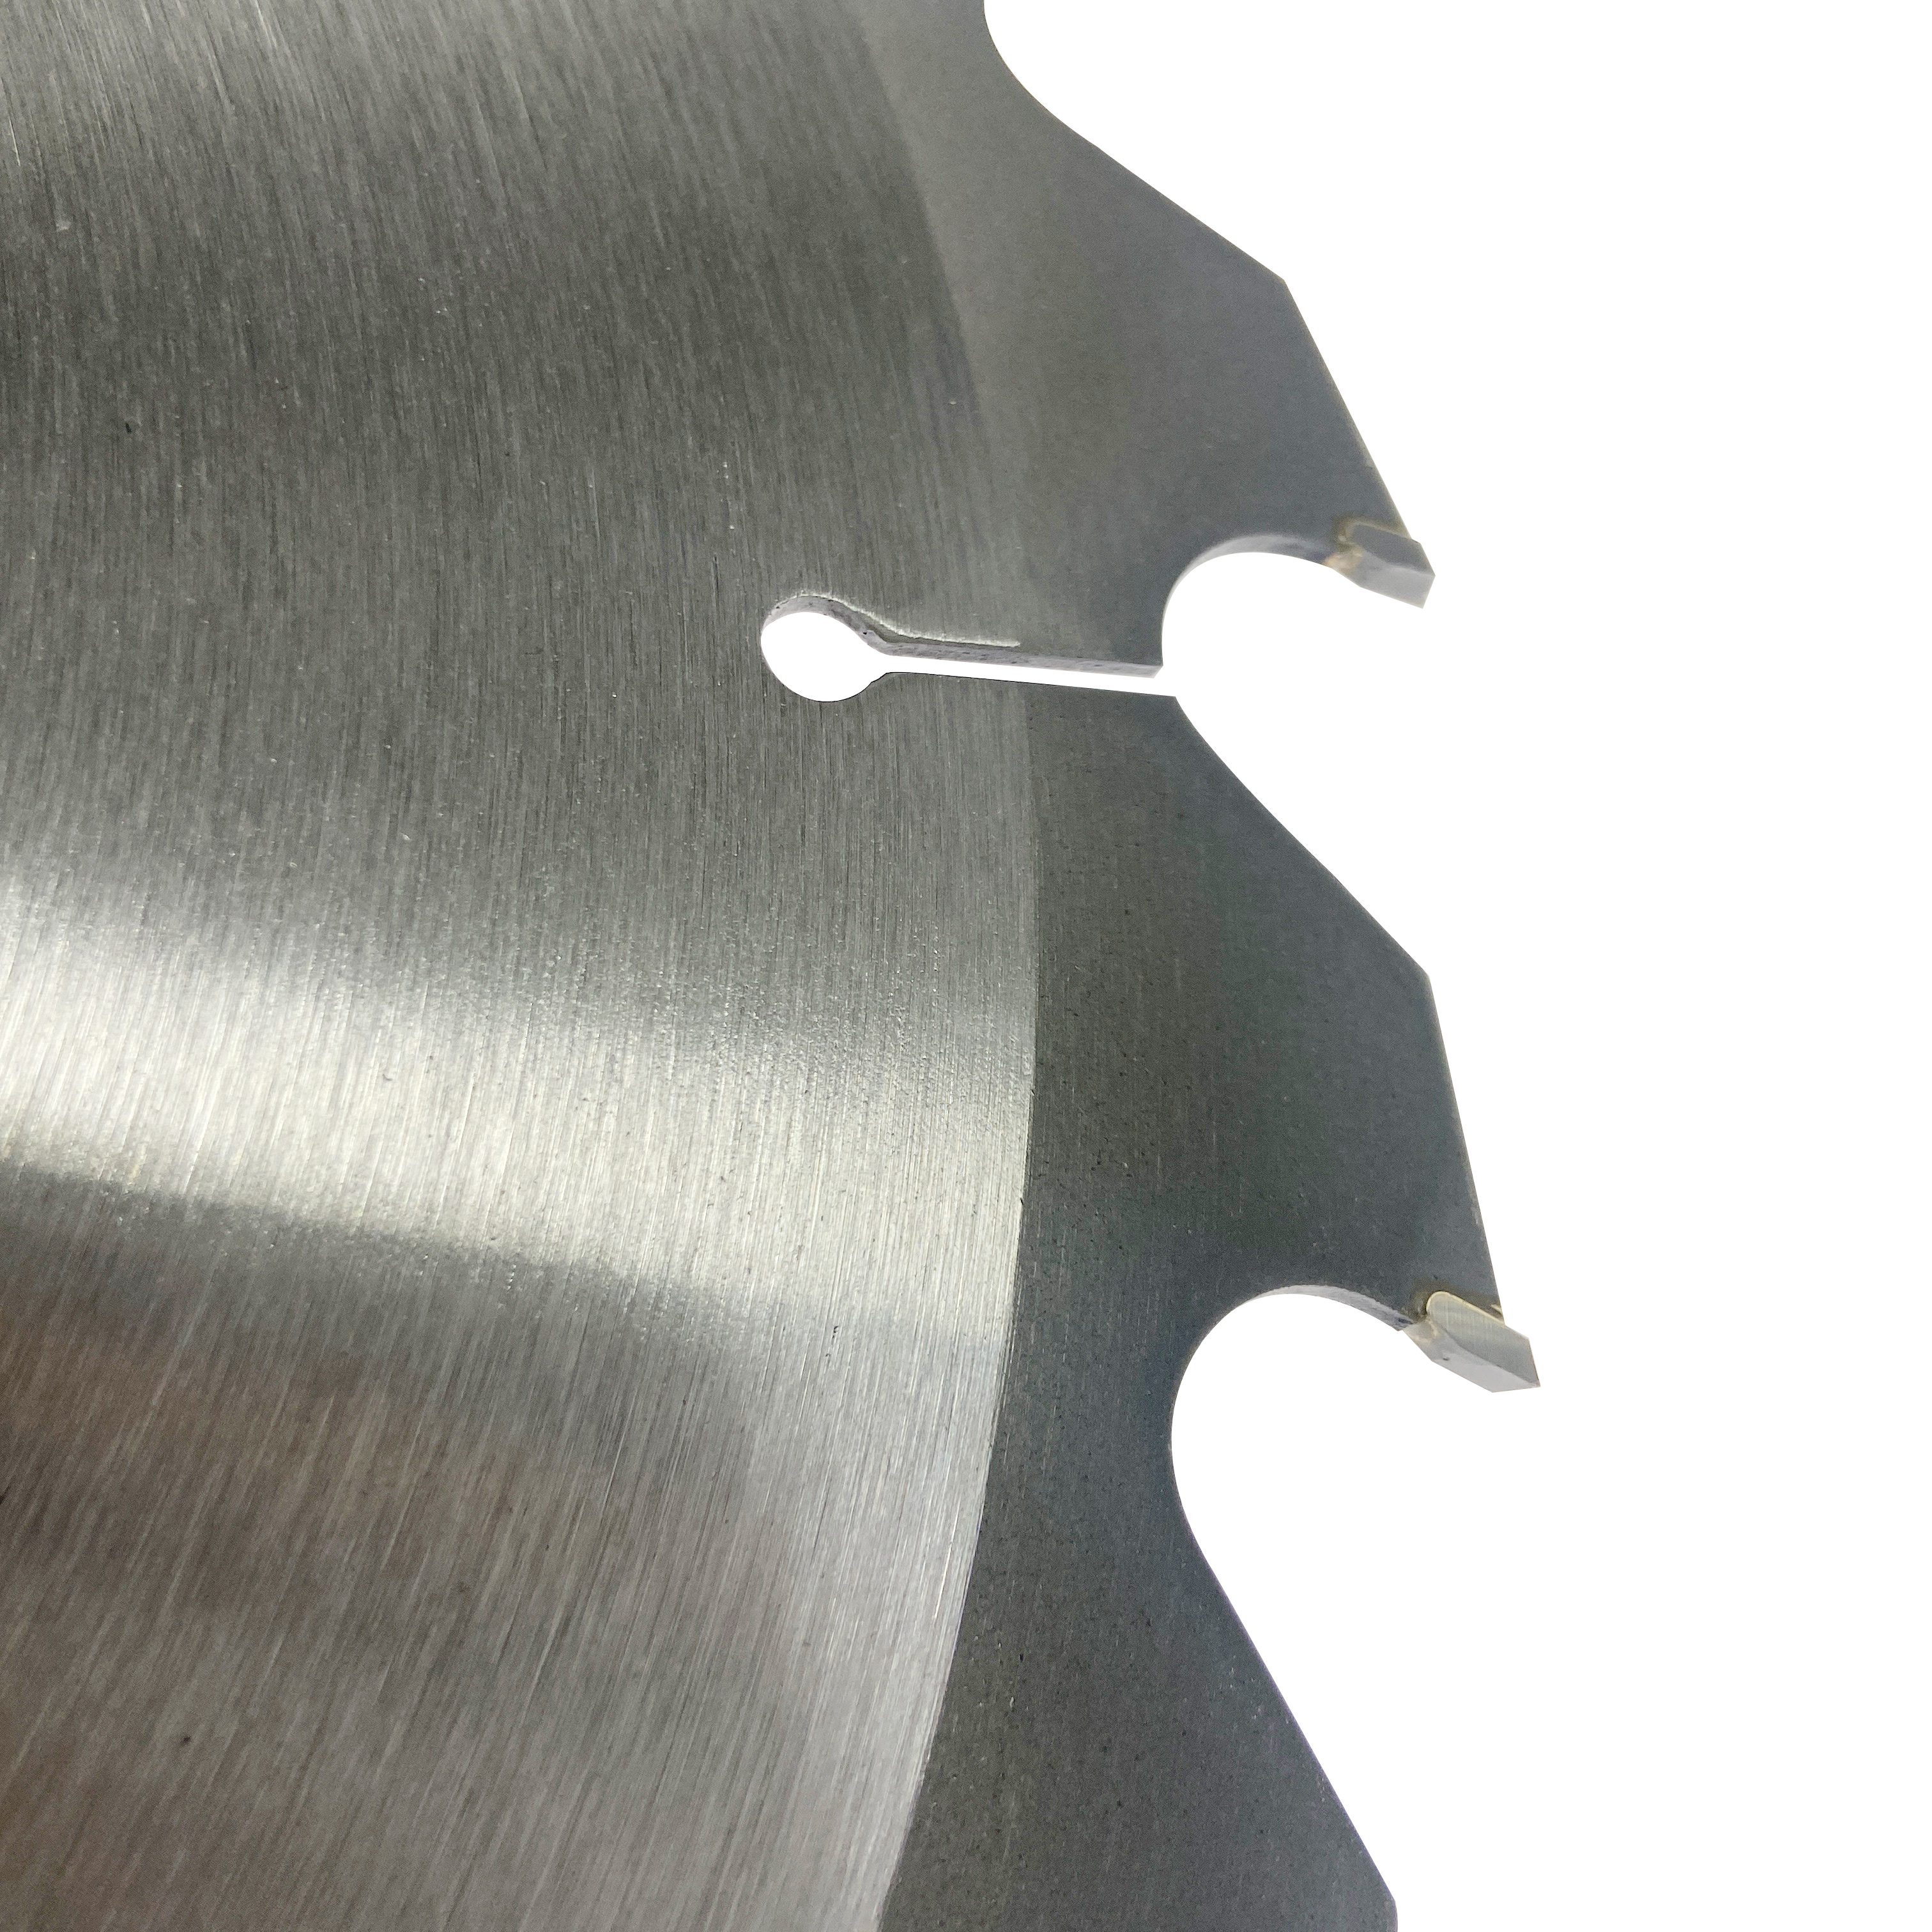 Hoja de sierra circular tct de grado superior de 14 pulgadas 350 * 24T * 25,4 mm para corte de madera